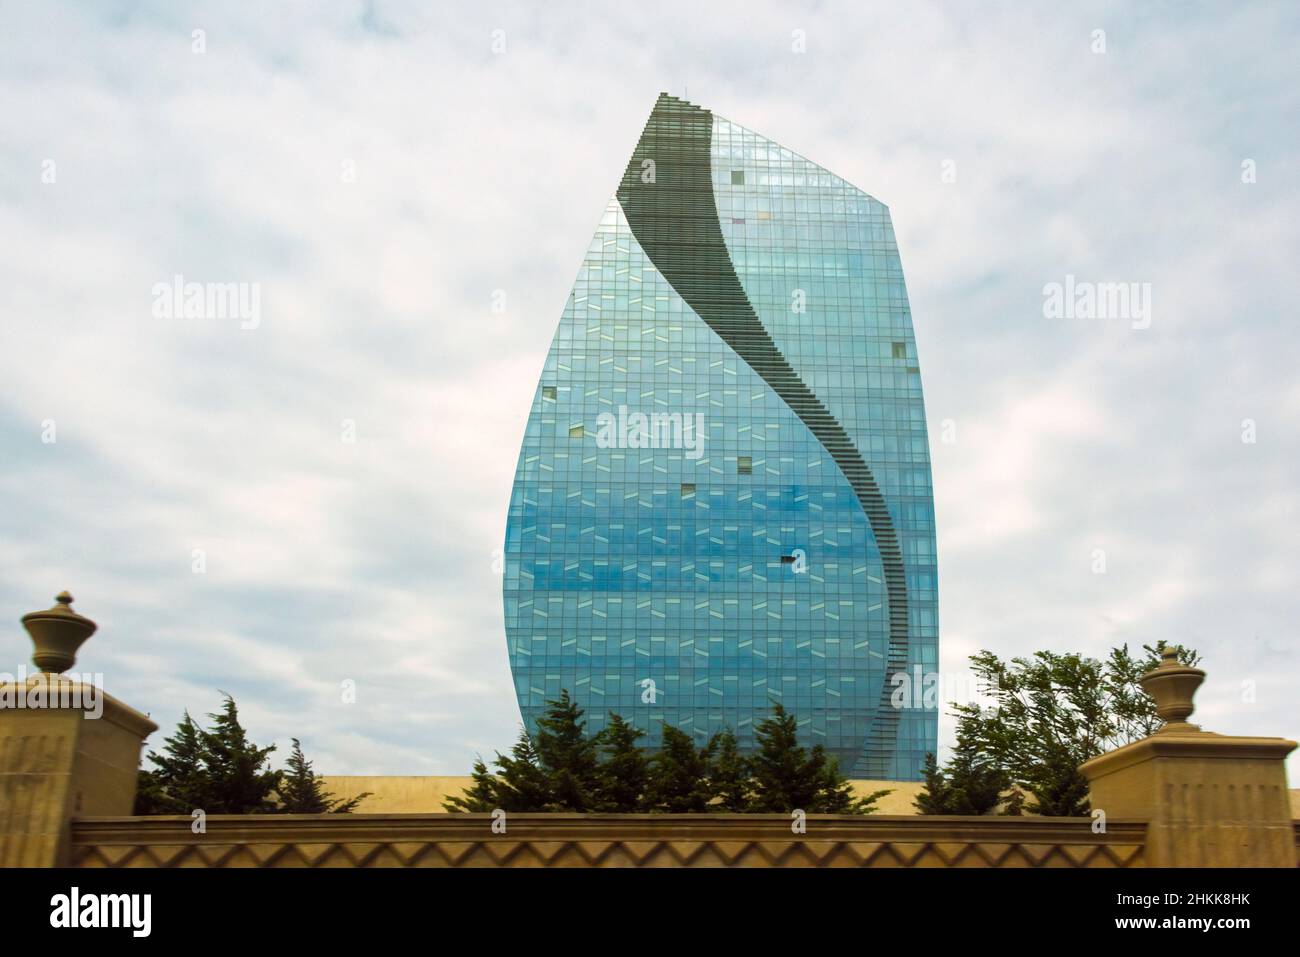 Azersu Office Tower, Baku, Azerbaijan Stock Photo